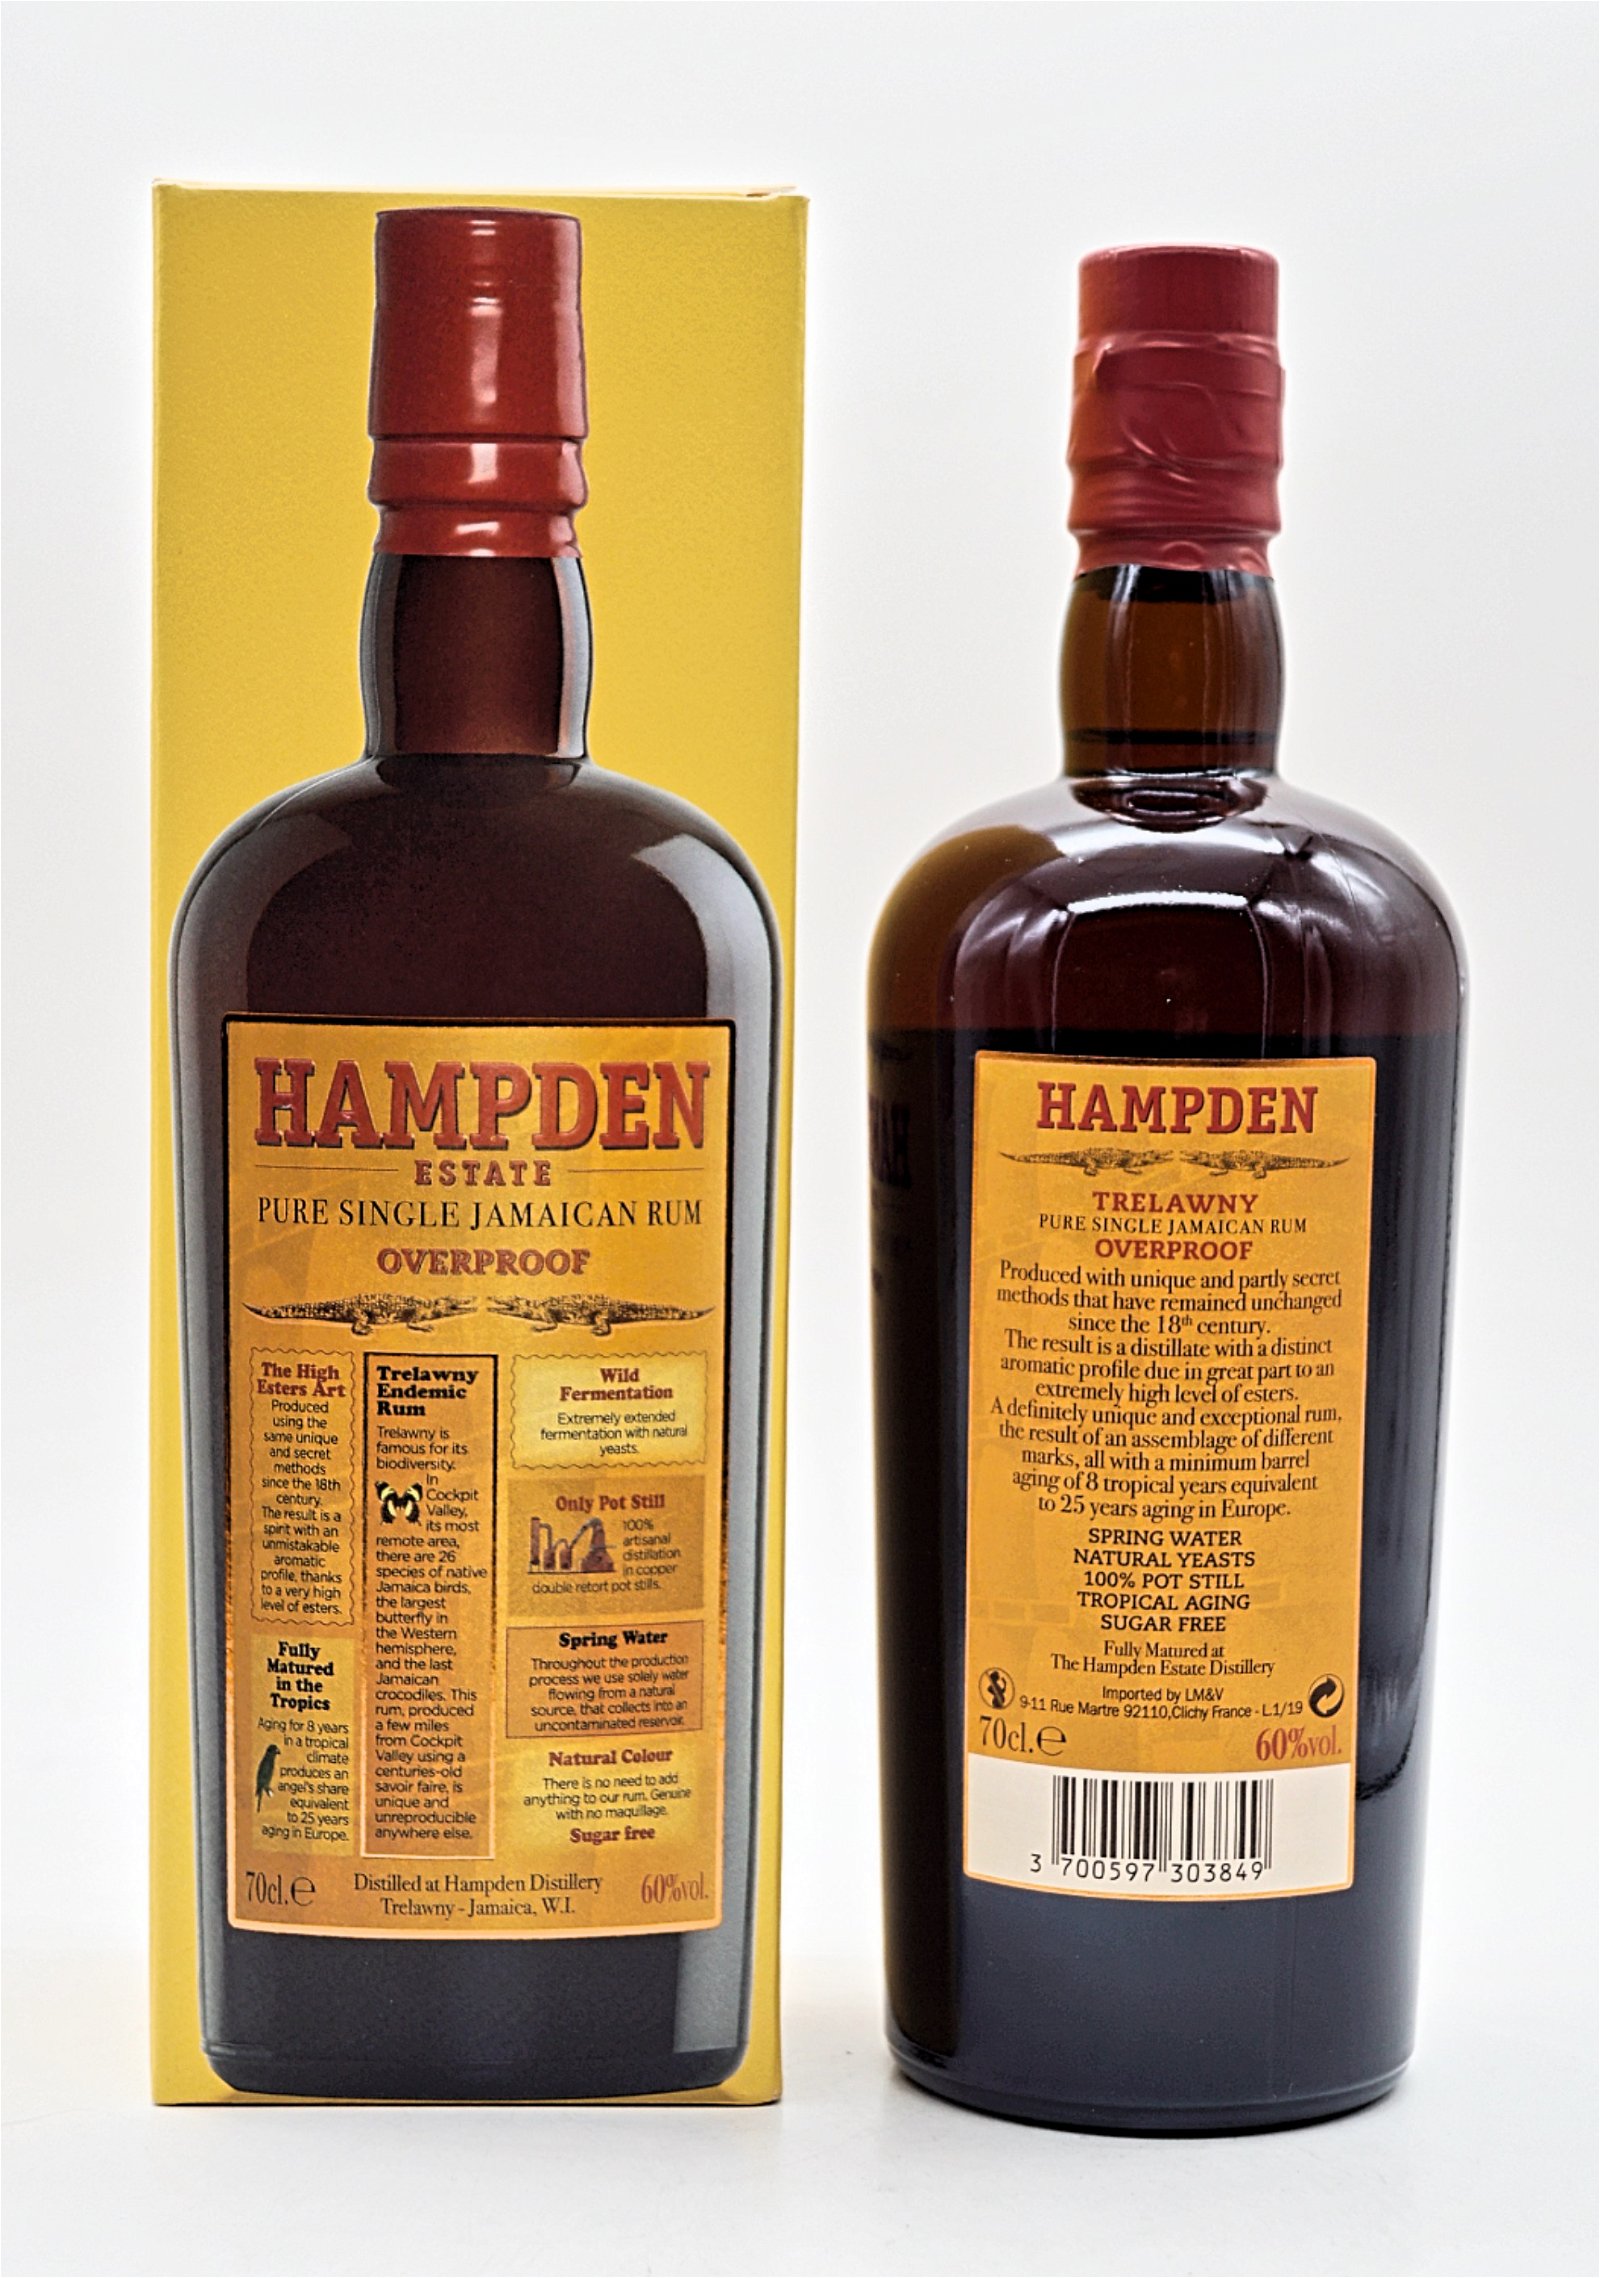 The Hampden Overproof Pure Single Jamaican Rum